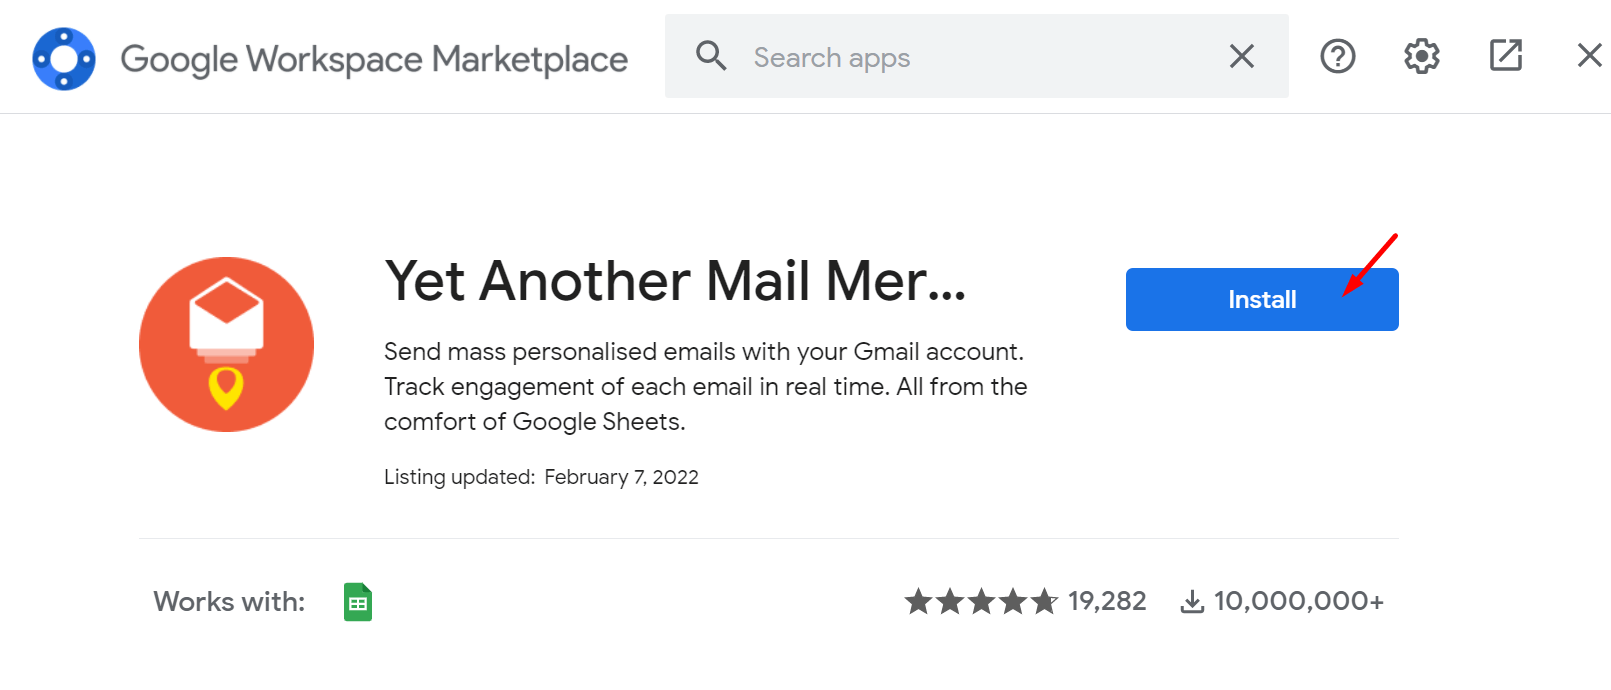 mail merger installation